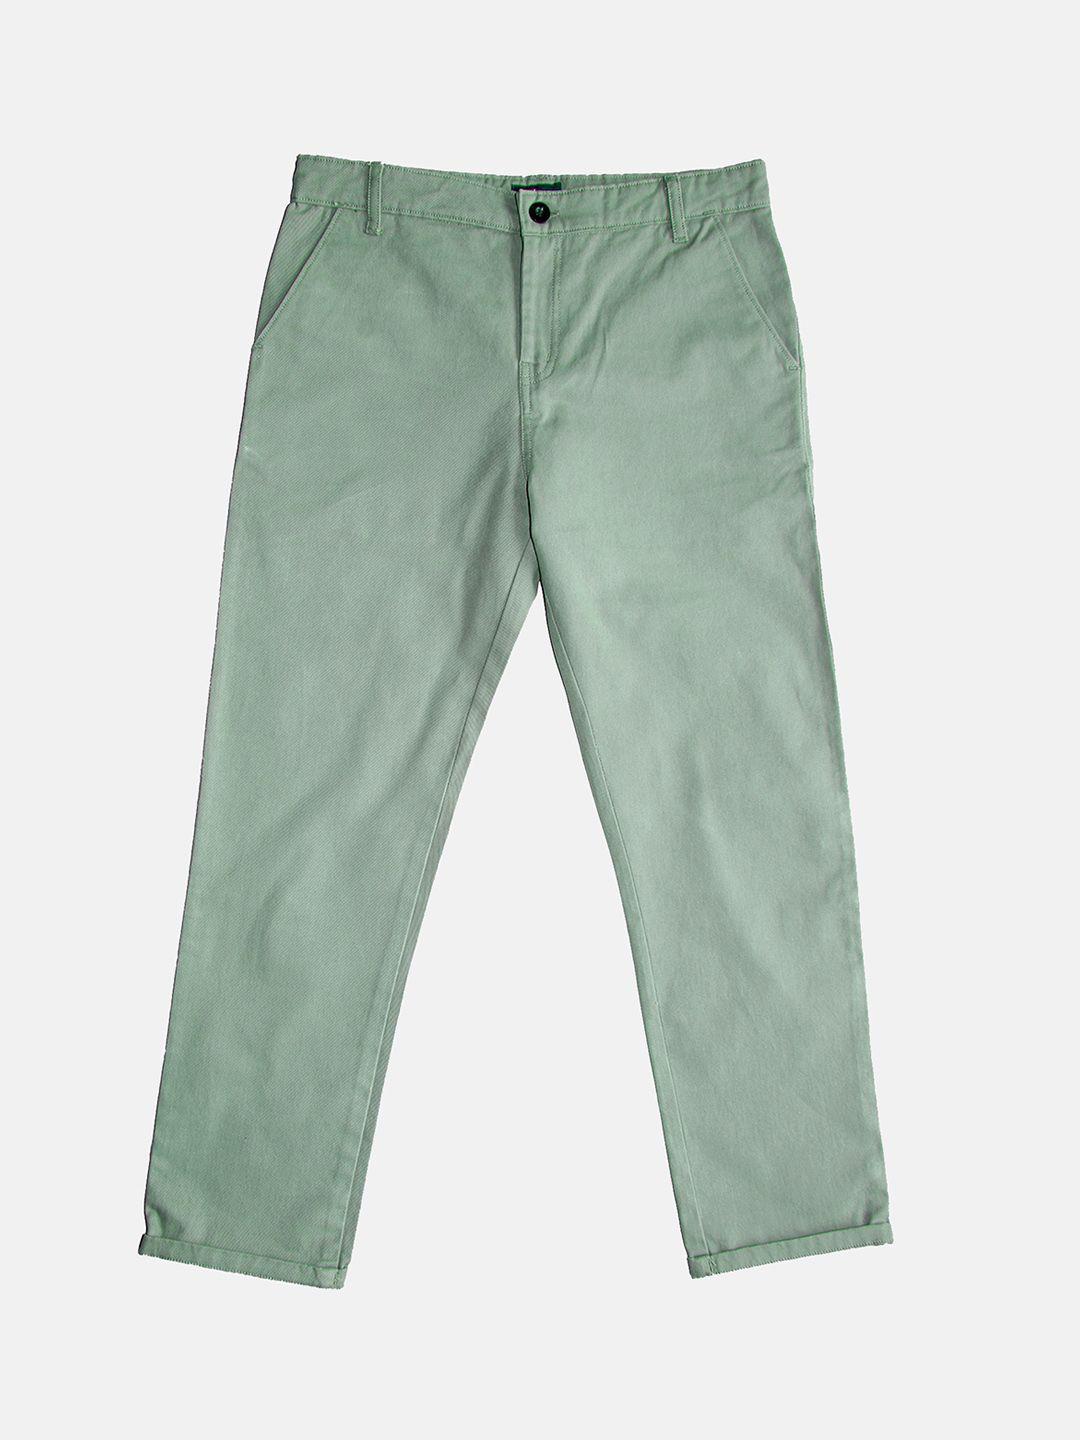 kiddopanti boys pure cotton chinos trousers